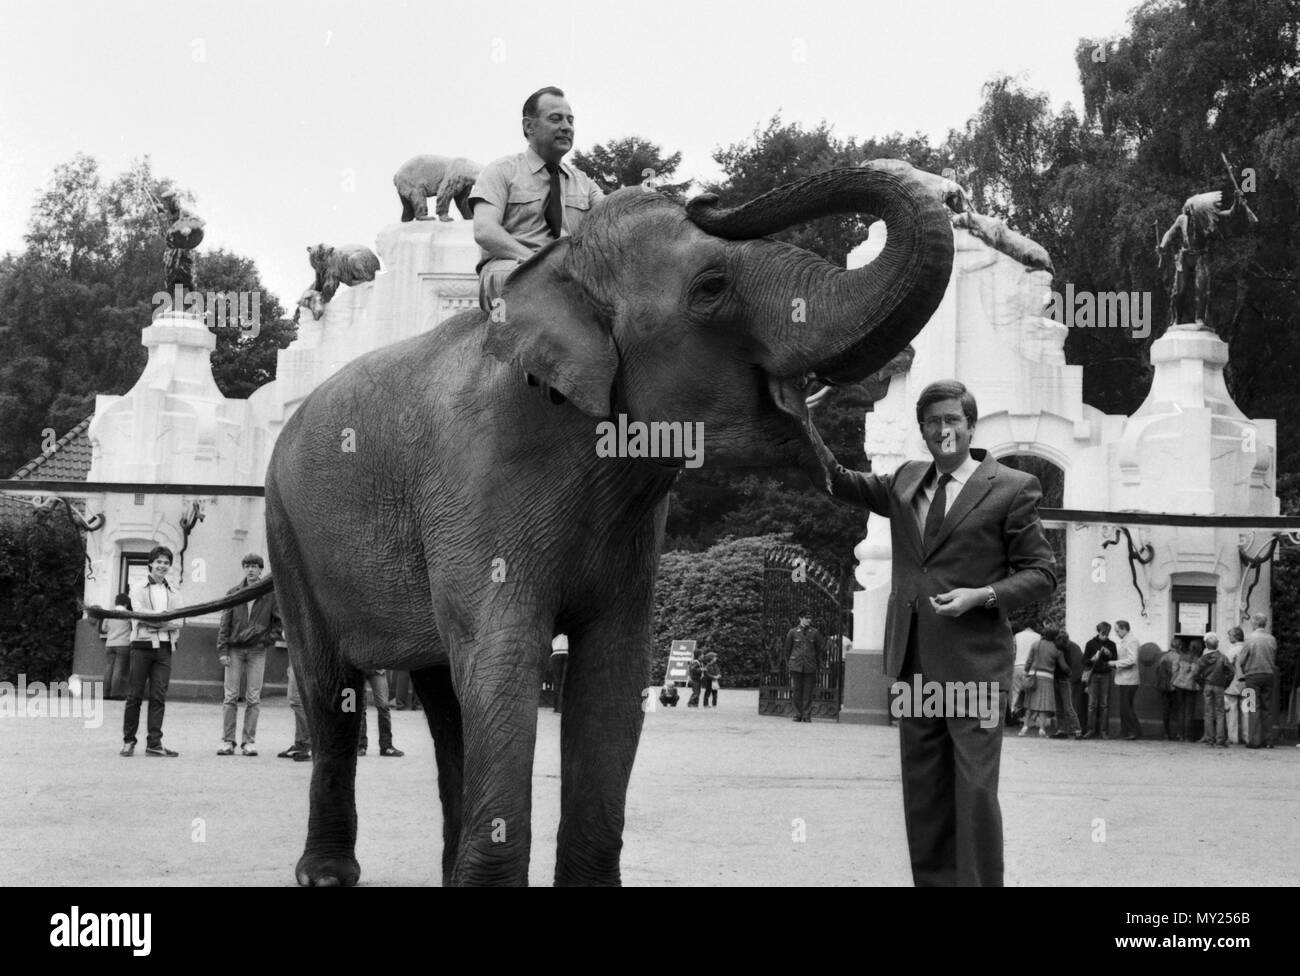 Gehn wir mal zu Hagenbeck, Sondersendung zum 75. Geburtstags des Tierparks in Hamburg-Stellingen, Deutschland 1982, Direktor Dr. Klaus Hagenbeck mit Elefant Stockfoto